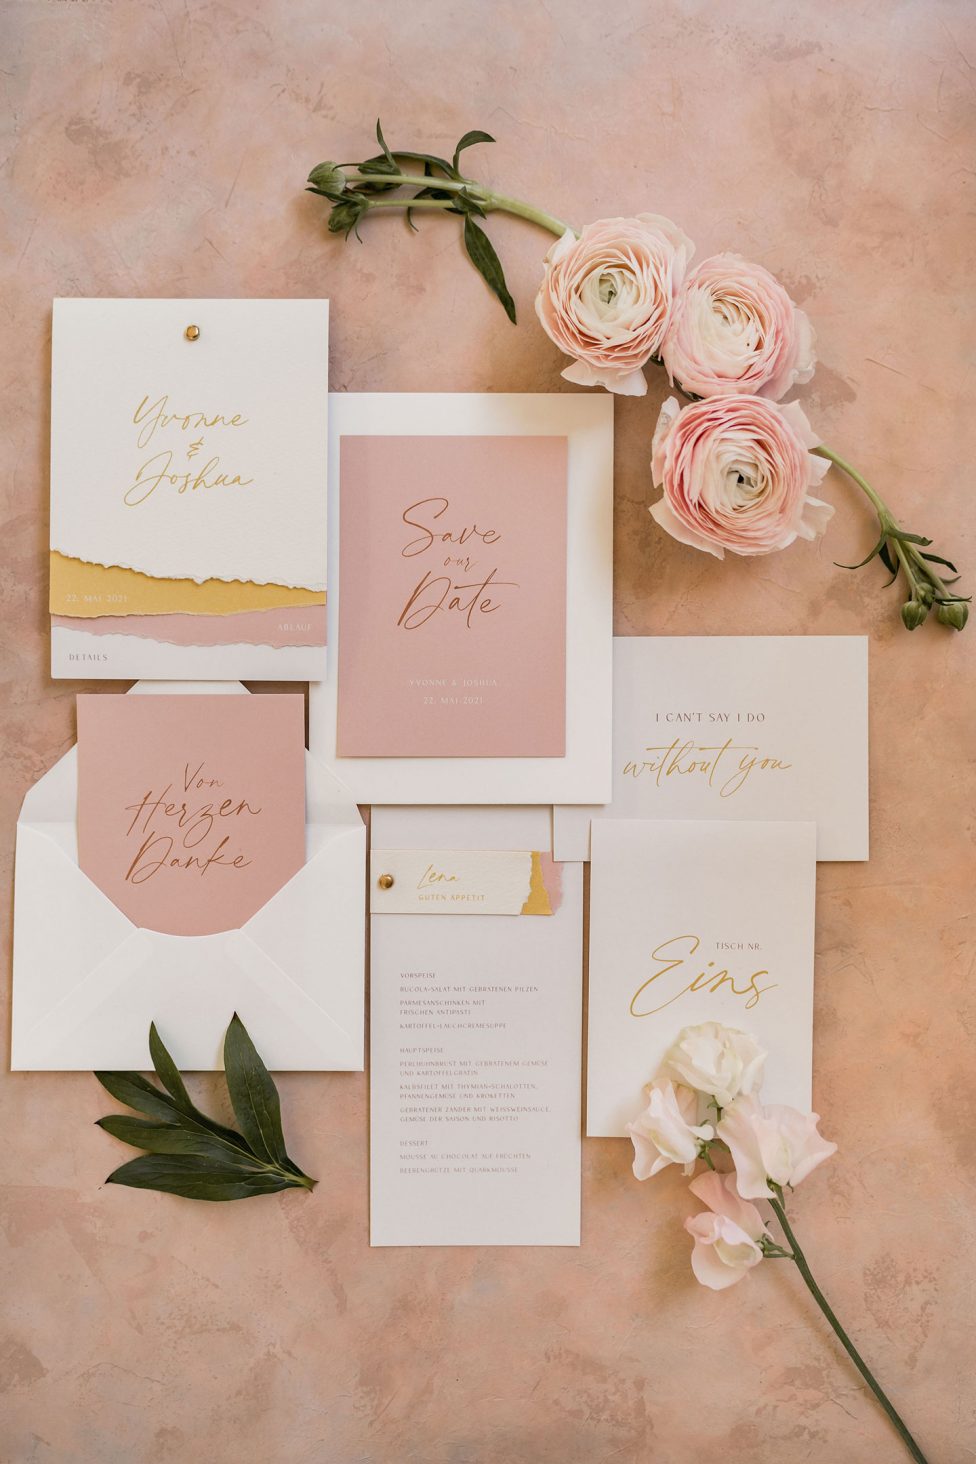 Hochzeitswahn - Ein elegantes Hochzeitspapeterie-Set, einschließlich Einladungen und Save-the-Date-Karten, geschmückt mit goldenen Akzenten, auf einem rosigen Hintergrund angeordnet, ergänzt durch zarte Ranunkelnblüten und Grünpflanzen.